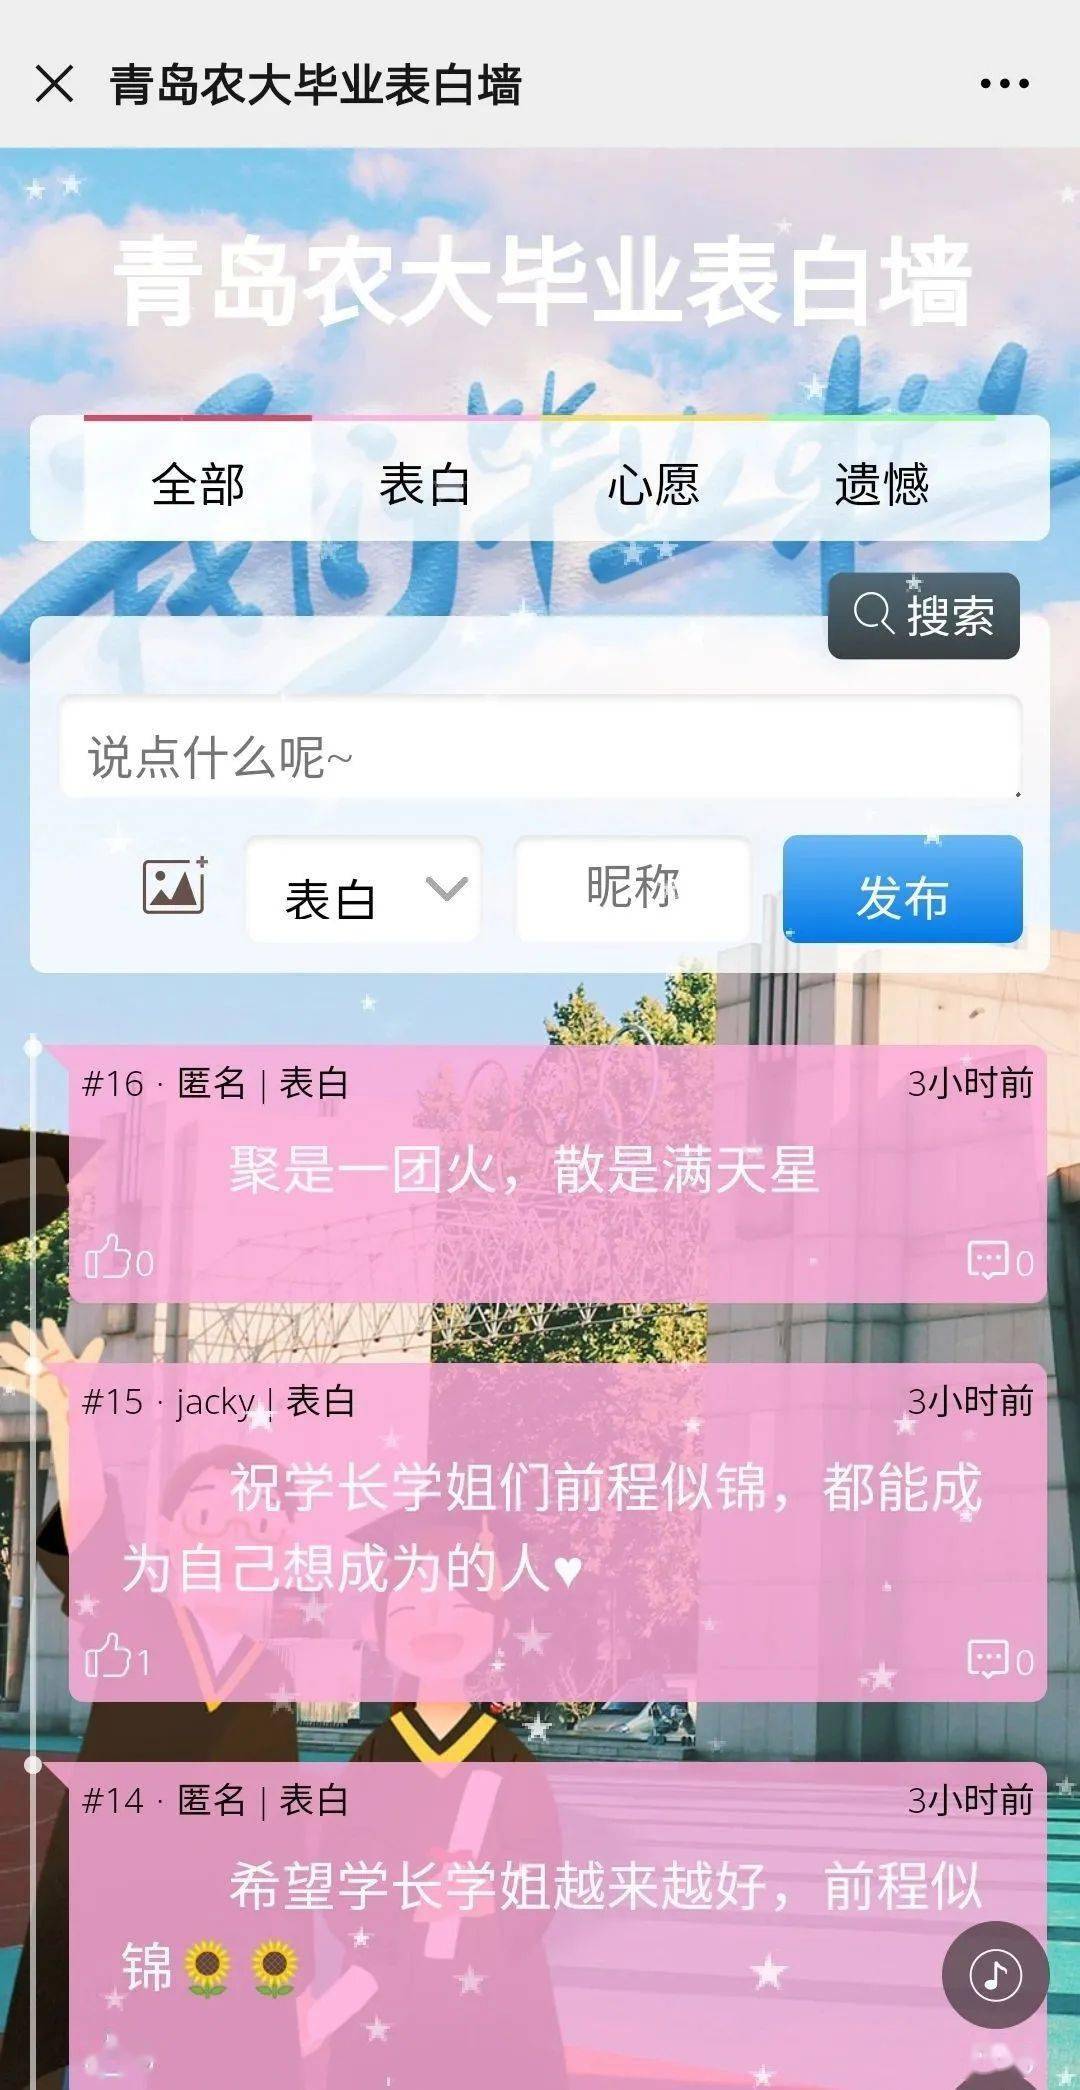 重庆移通学院表白墙QQ图片